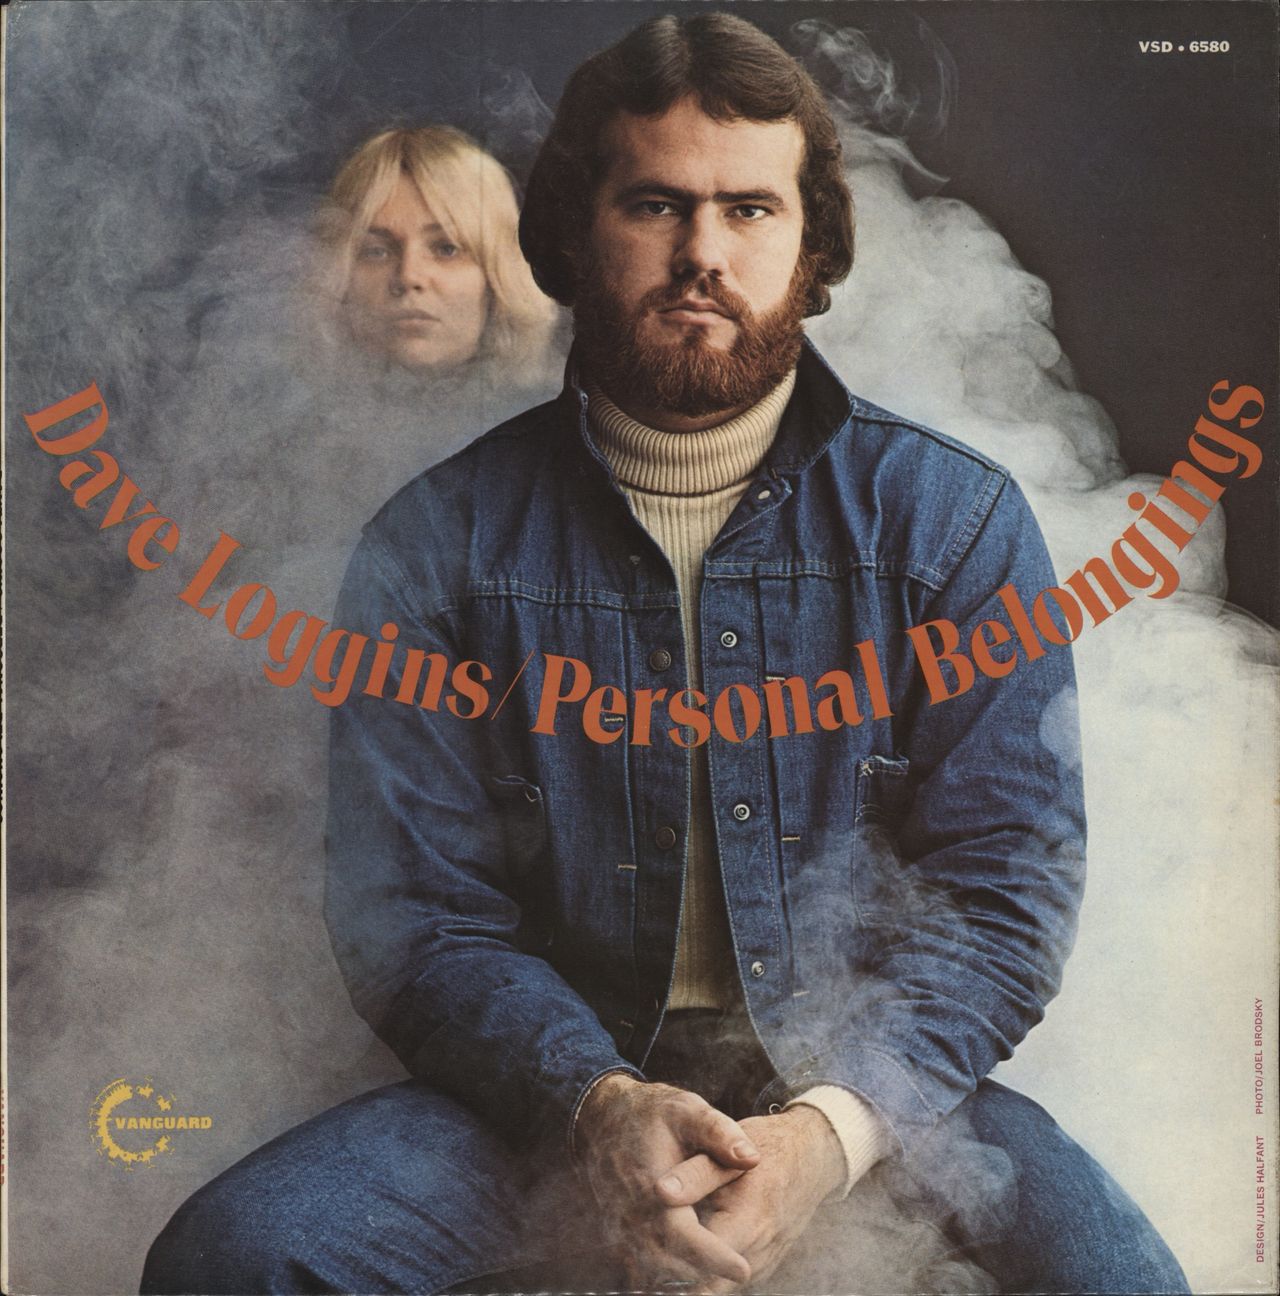 Dave Loggins Personal Belongings UK vinyl LP album (LP record) VSD6580